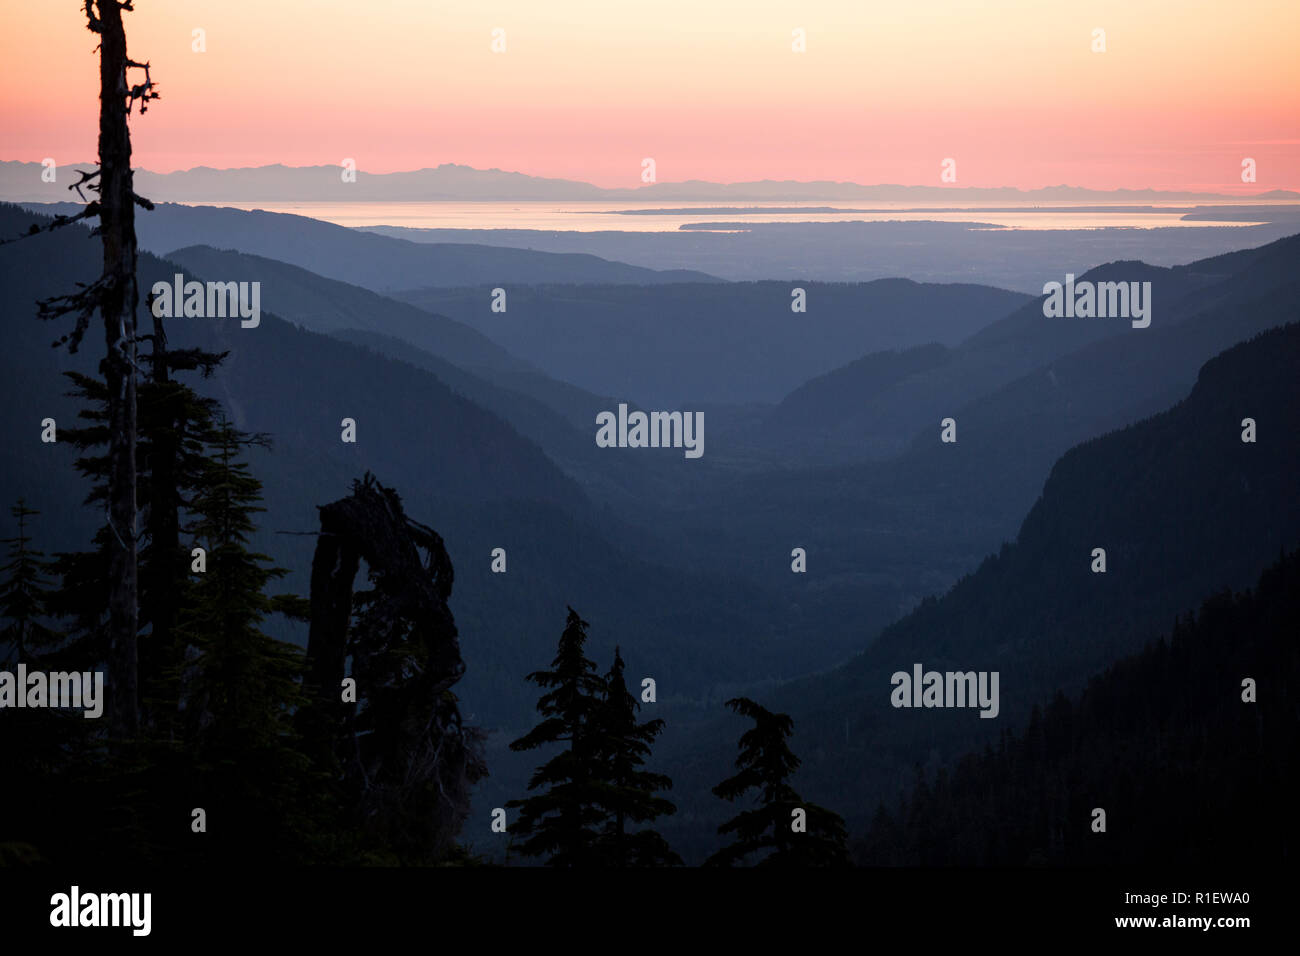 Sonnenuntergang, Sonne, über den Bergen. Sonnenuntergang in den Bergen mit Panoramablick. Farbenfroh und malerischen Sonnenuntergang über der Cascade Mountains. Blick auf Vancouver Island. Stockfoto